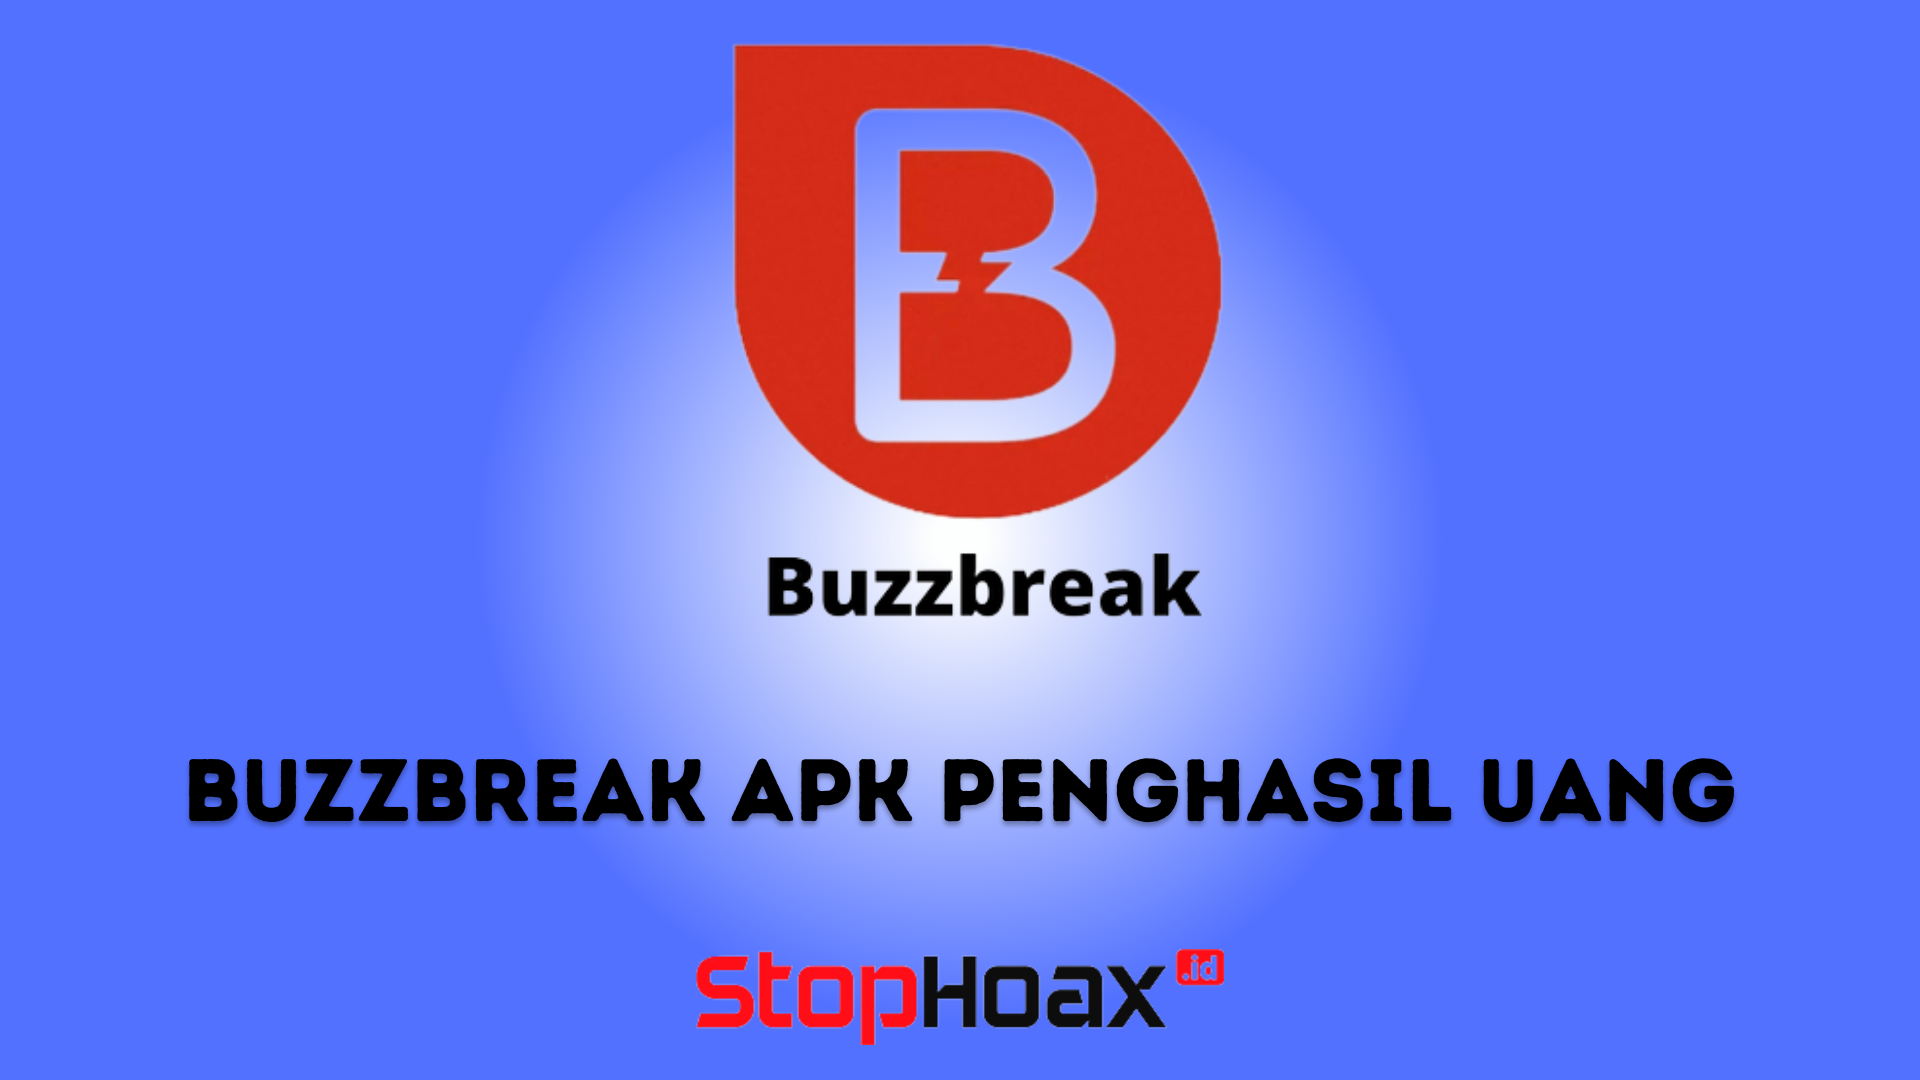 Download Buzzbreak Apk Penghasil Uang Terpercaya